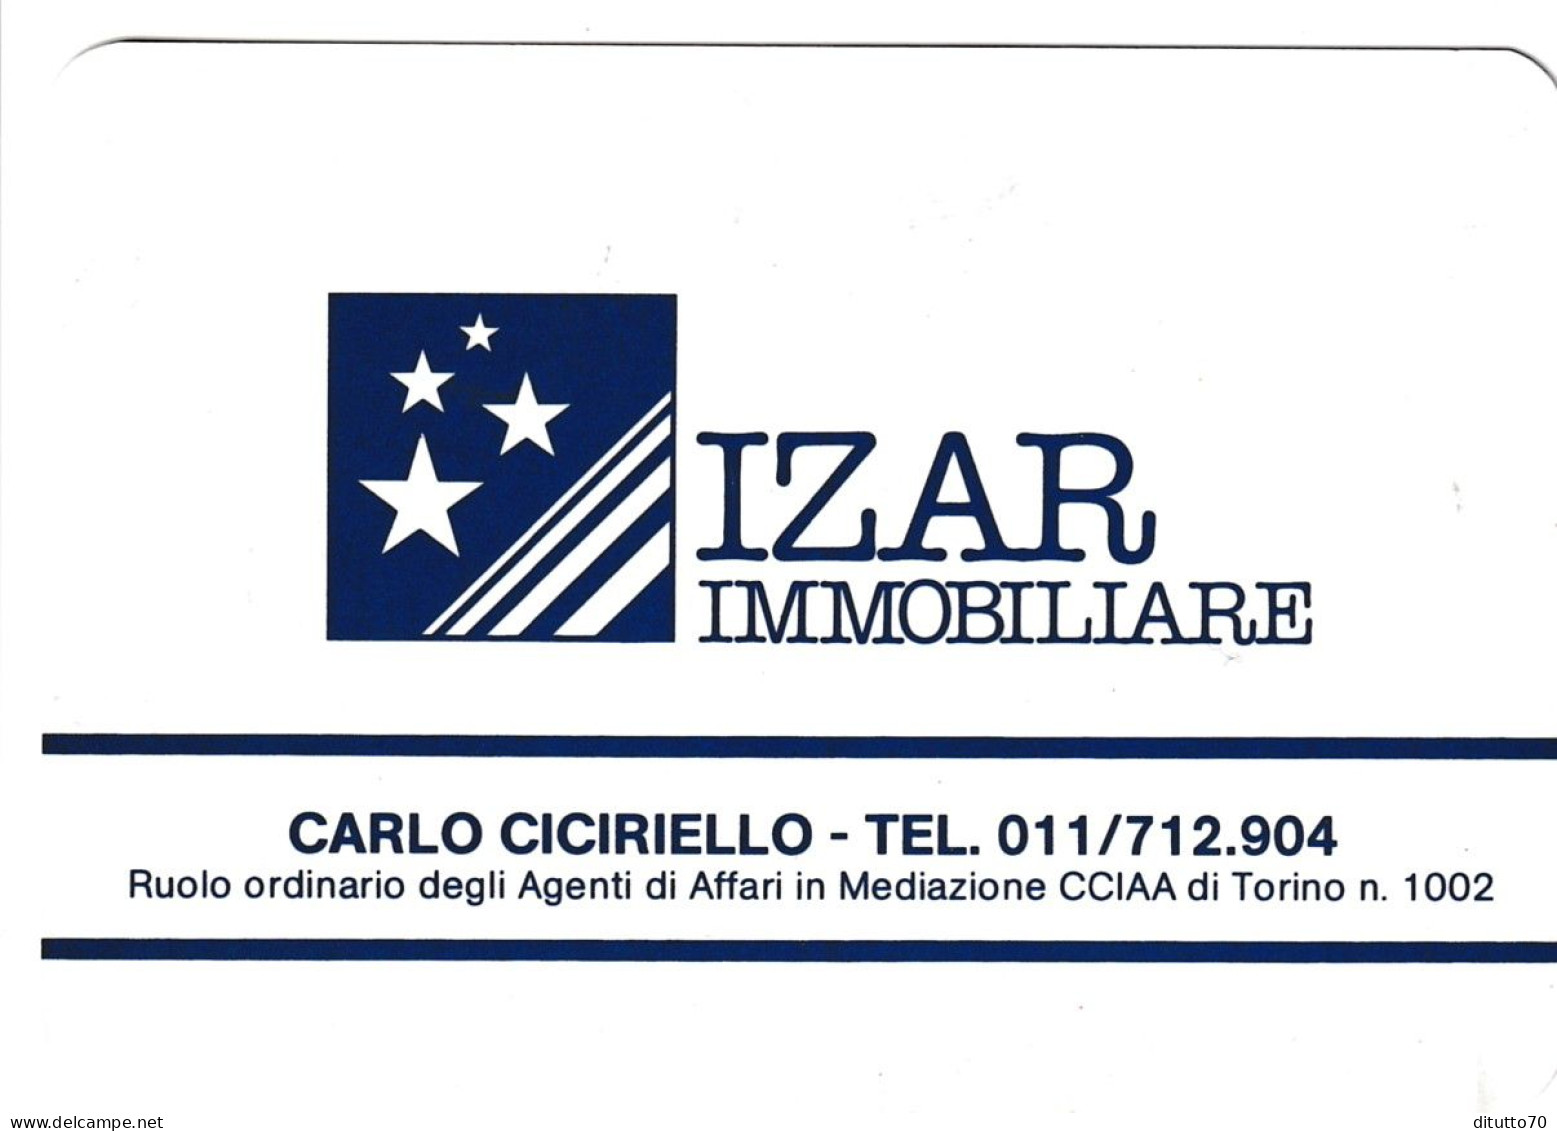 Calendarietto - Izar - Immobiliare - Torino - Anno 1985 - Small : 1981-90